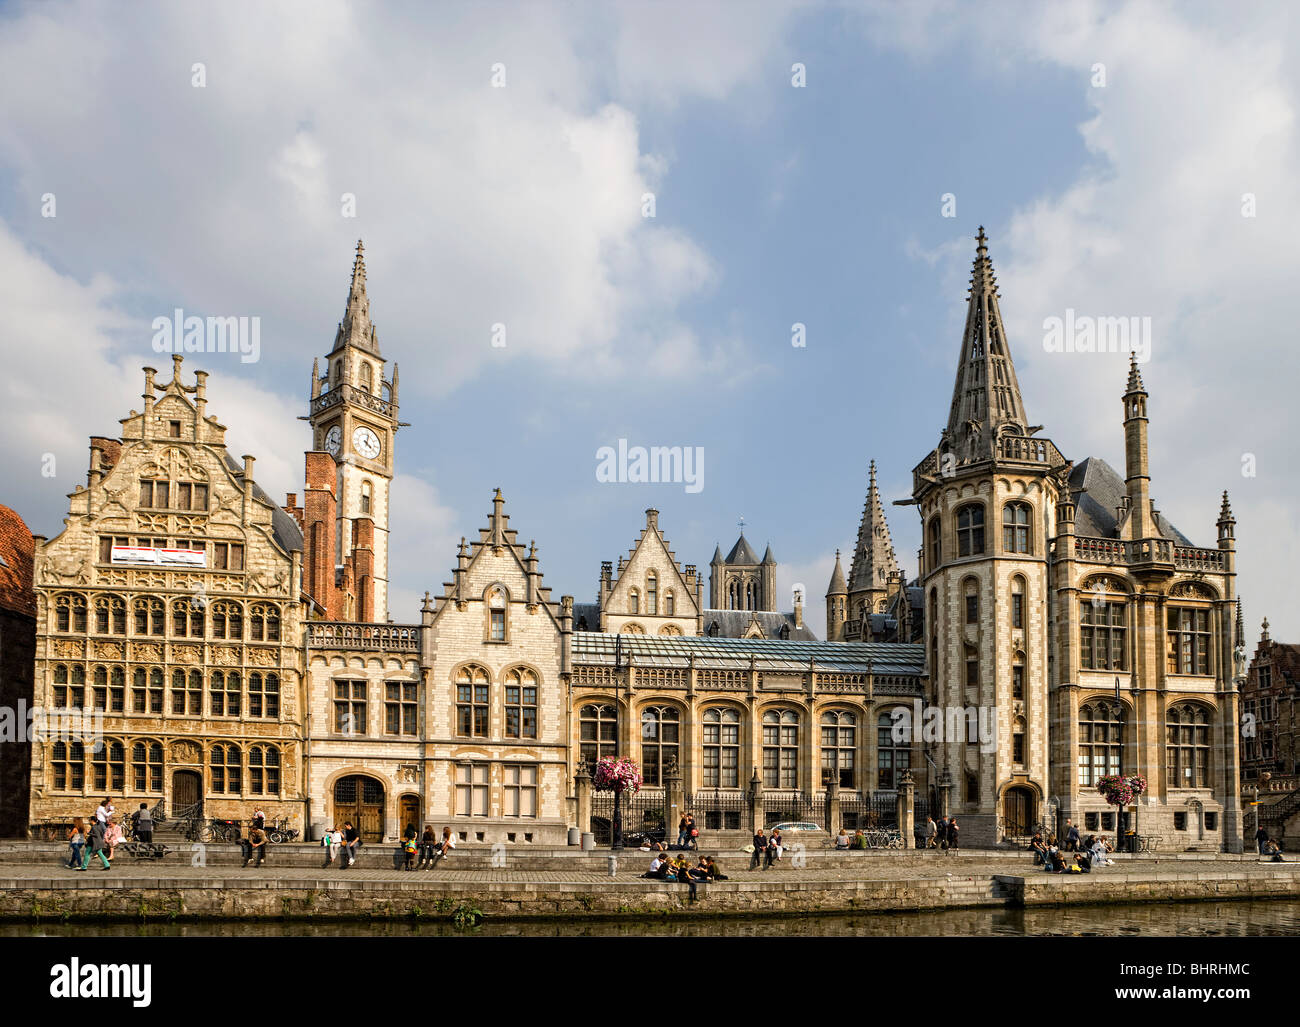 Maisons de guilde avec tour de l'horloge à l'Graslei quayside à Gand, Flandre, Belgique, Europe Banque D'Images